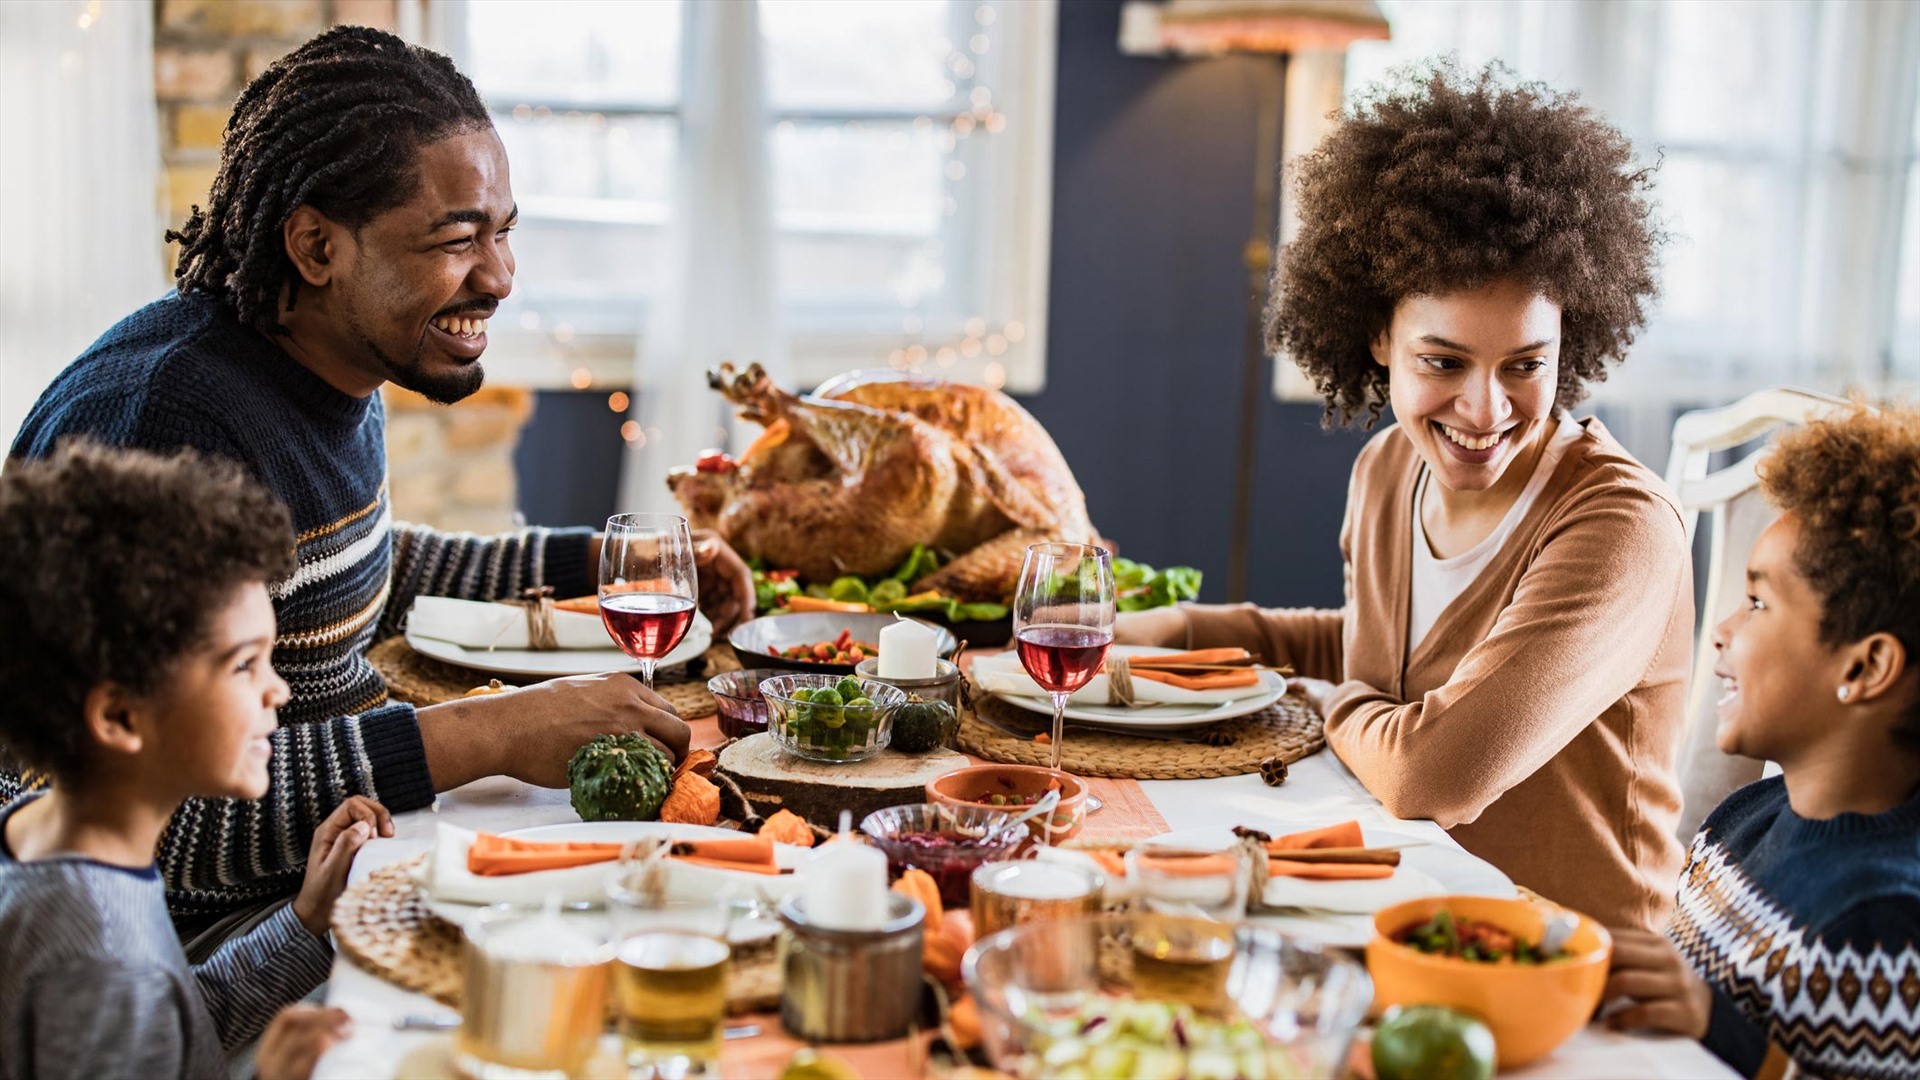 Hãy tận hưởng bữa cơm gia đình vui vẻ bên nhau. Ảnh nguồn: Parentology.